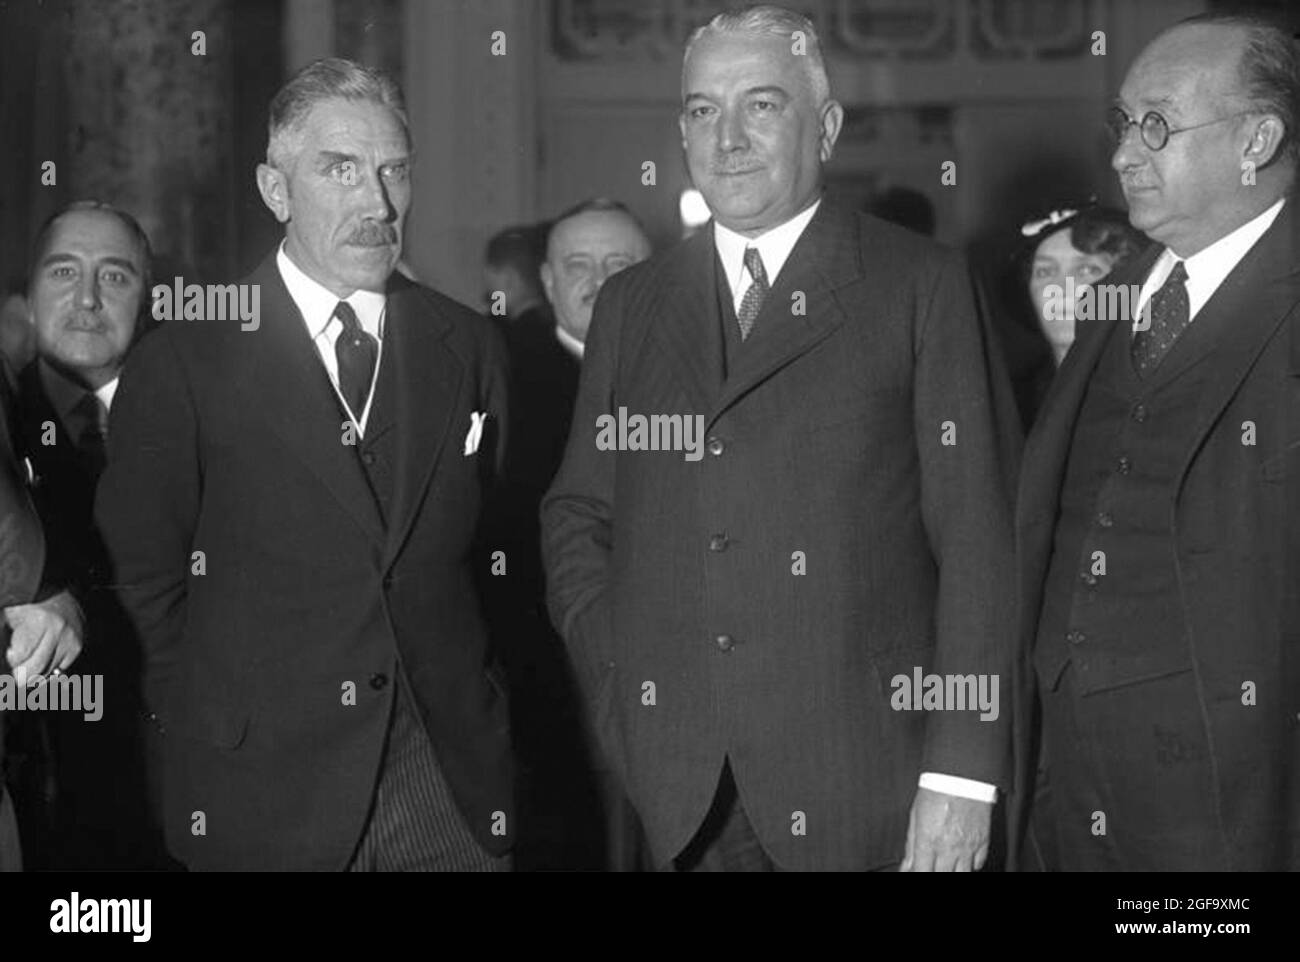 Le chancelier allemand Franz von Papen et le ministre des Affaires étrangères Konstantin von Neurath en novembre 1932. Crédit: Bundesarchiv allemand Banque D'Images